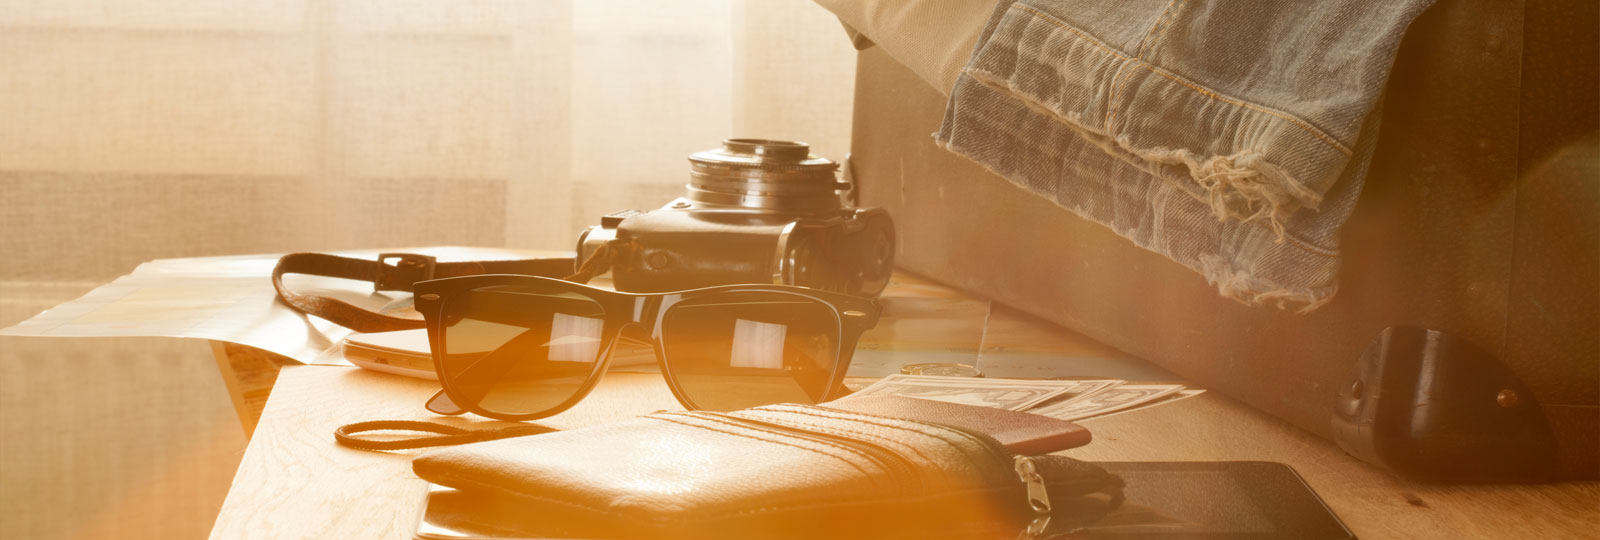 Une valise, des lunettes de soleil et un carnet